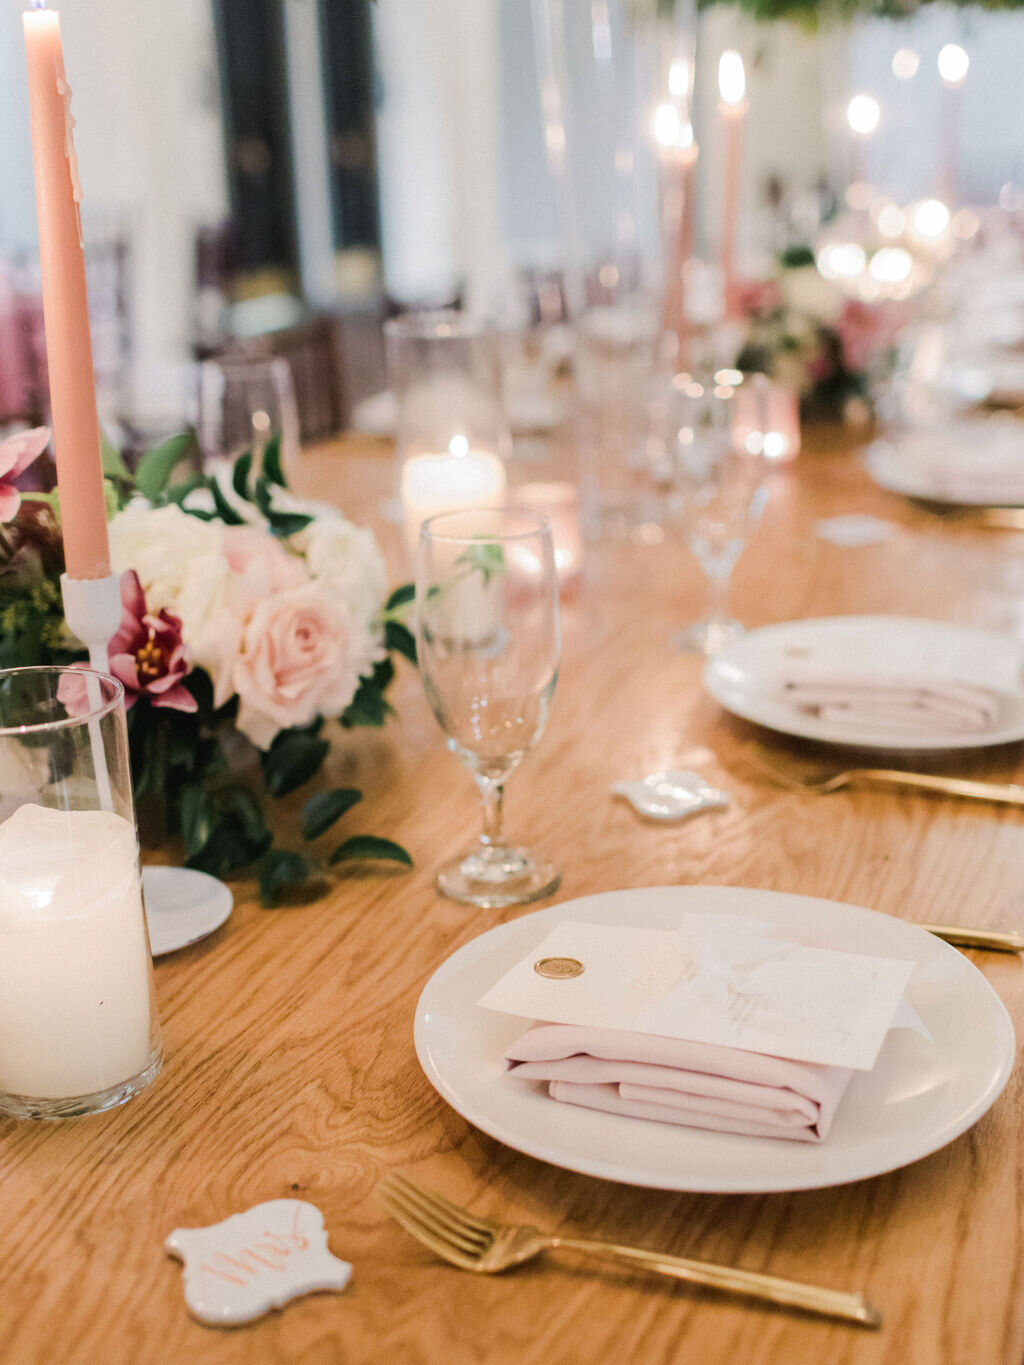 Pink napkins, wax seal menus, and a farm table